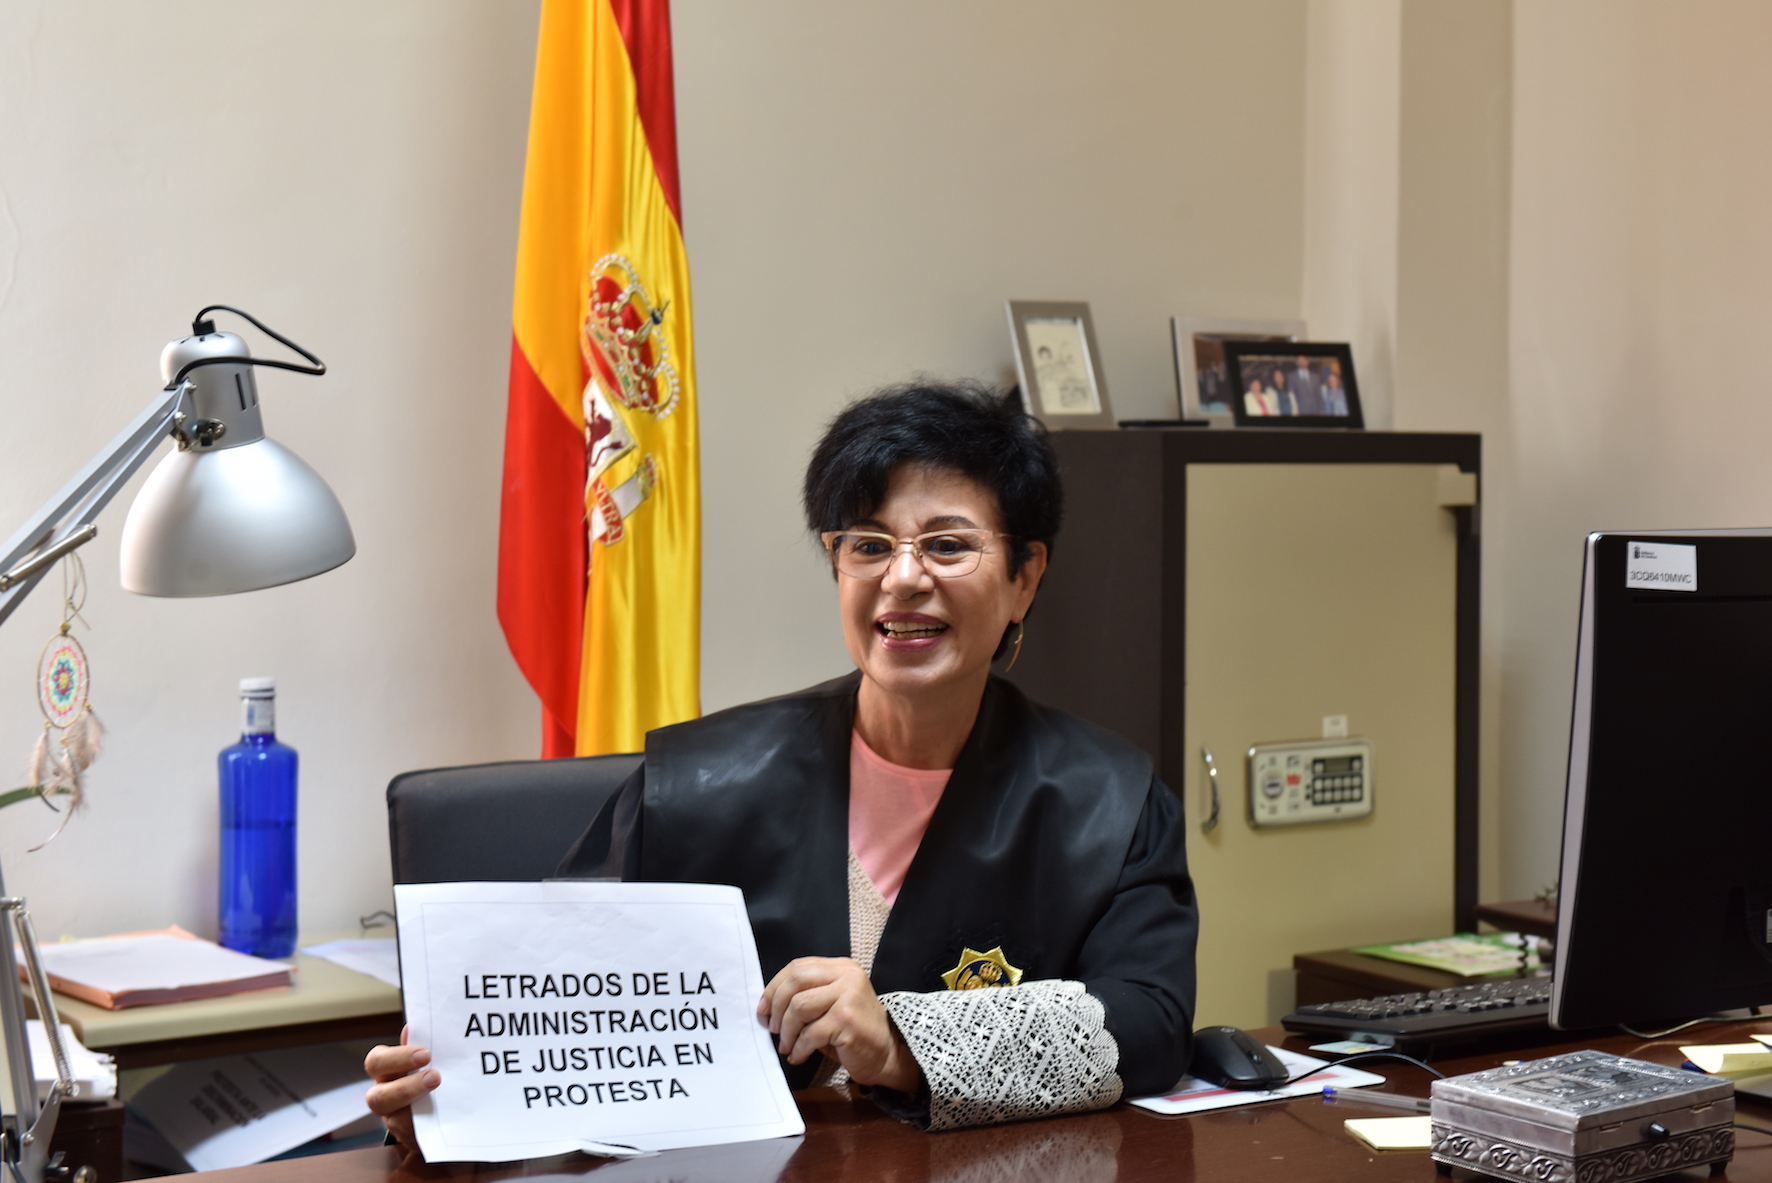 La huelga de letrados de la administración de Justicia afecta al Juzgado de Valverde